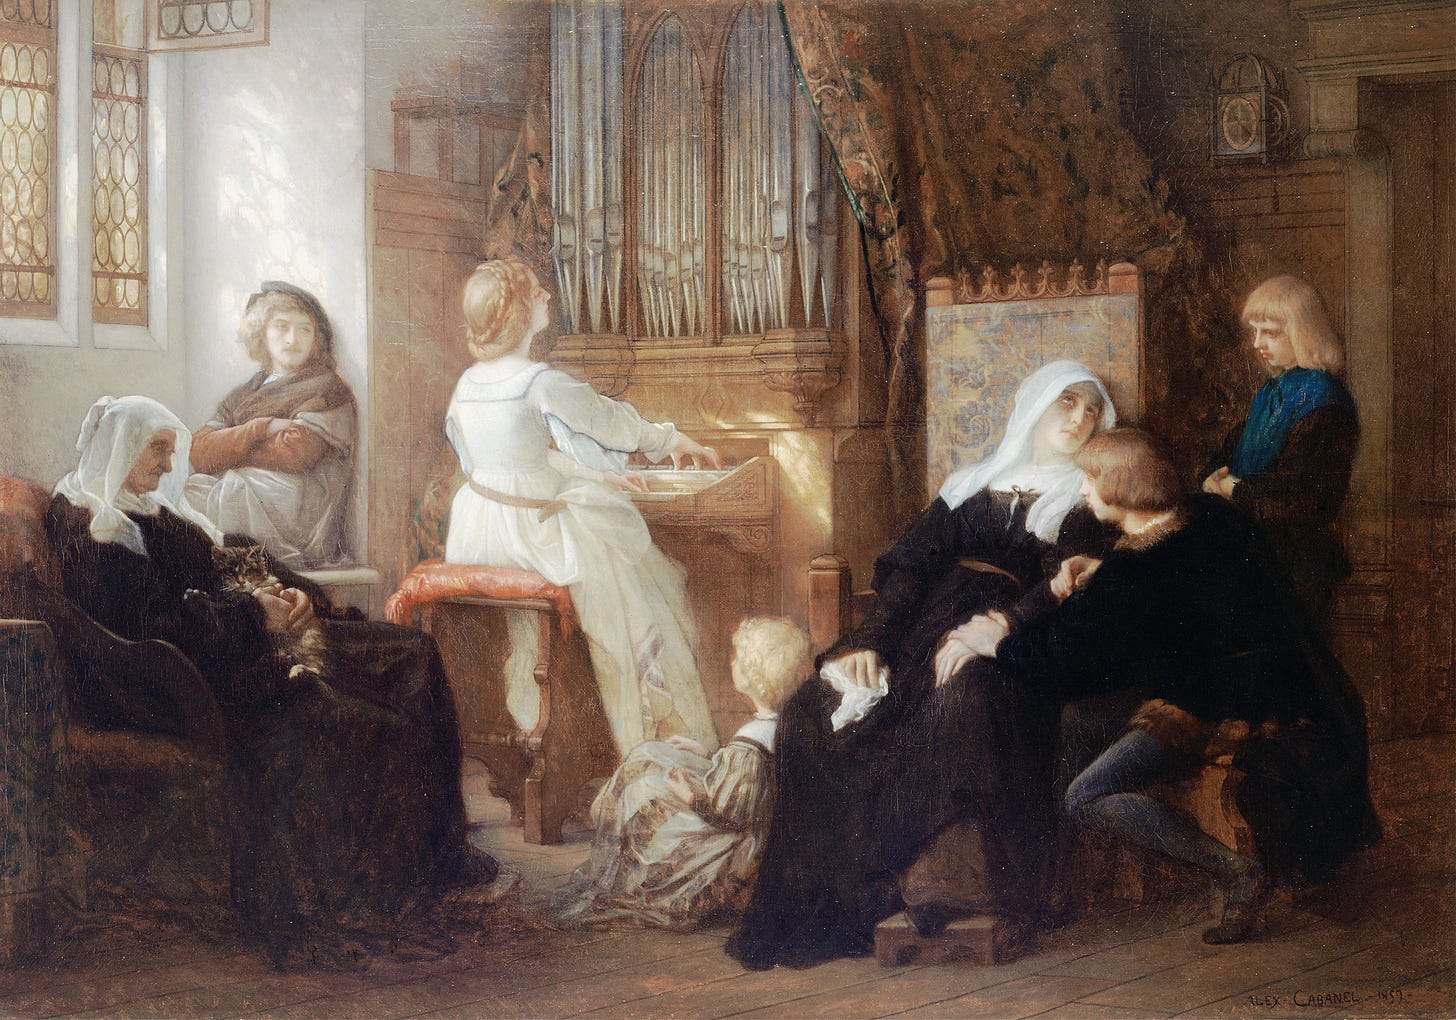 La veuve du maître de chapelle (1859) by Alexandre Cabanel